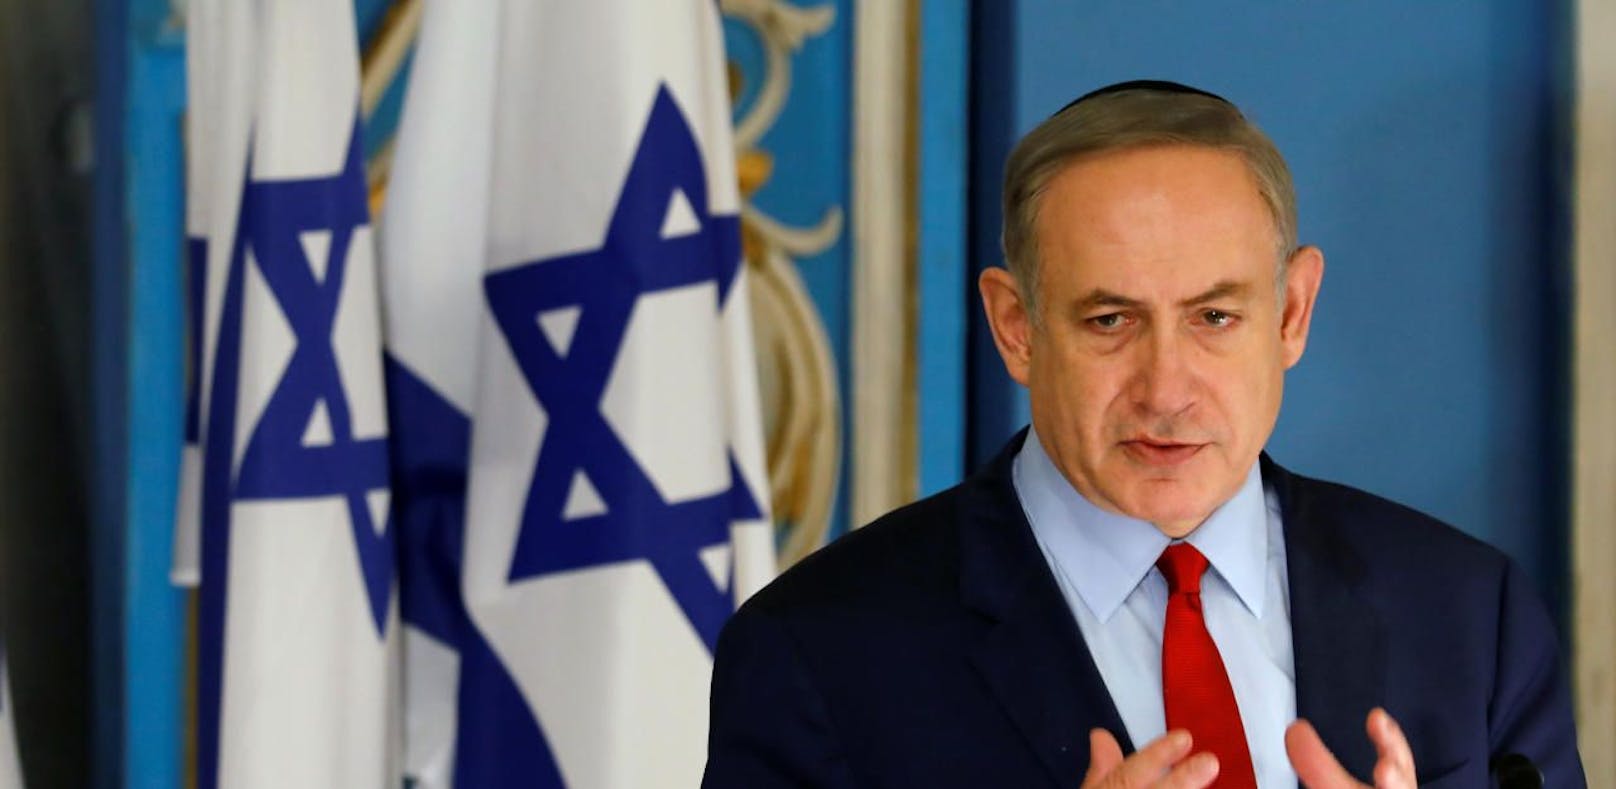 Israels Premier Benjamin Netanyahu